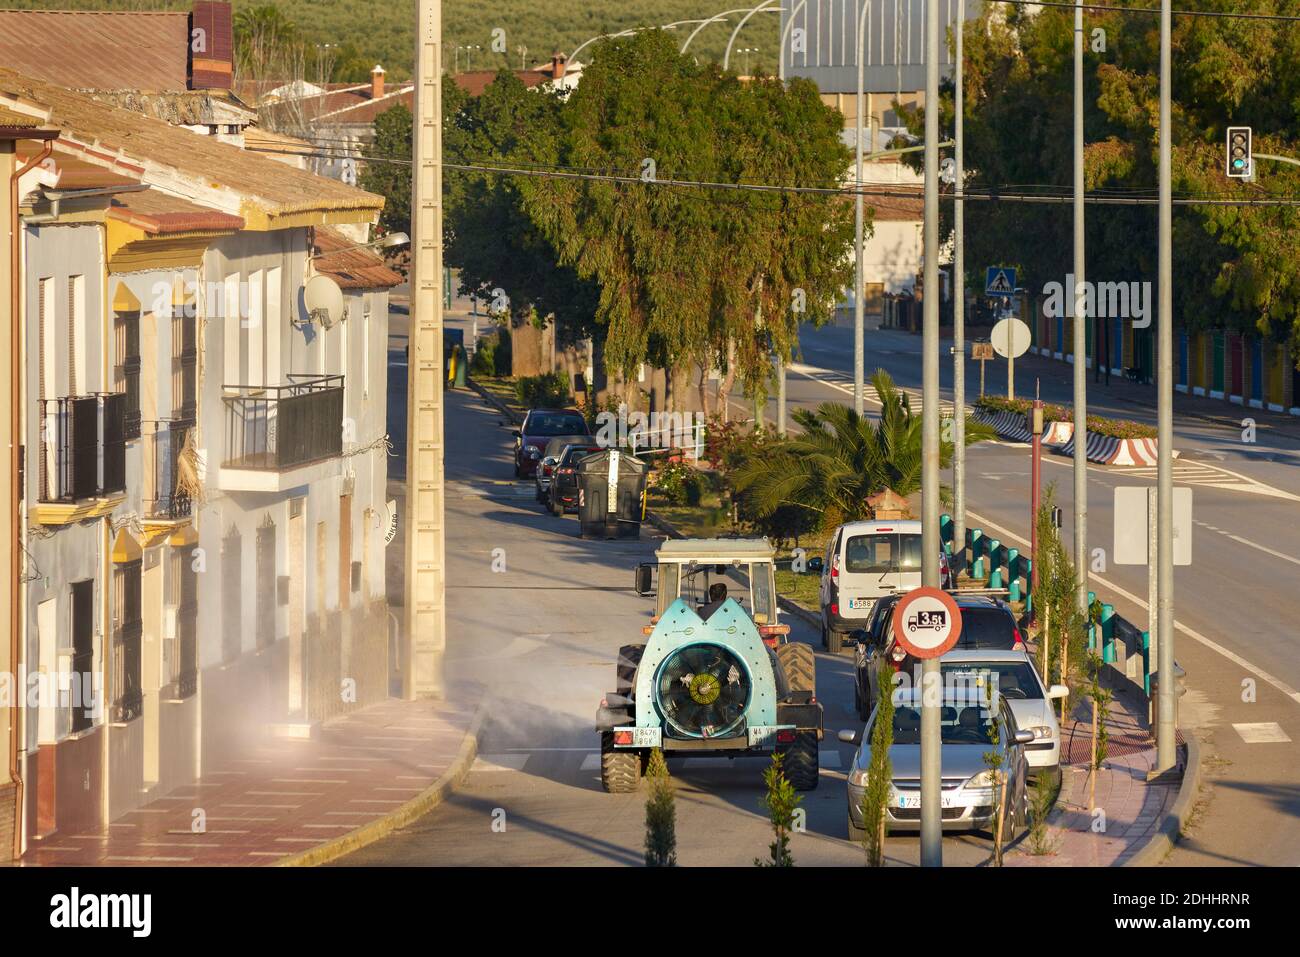 Legitimes Spritzen durch die Straßen von Humilladero während der Coronavirus-Pandemie (COVID-19). Malaga Mai 2020. Spanien Stockfoto